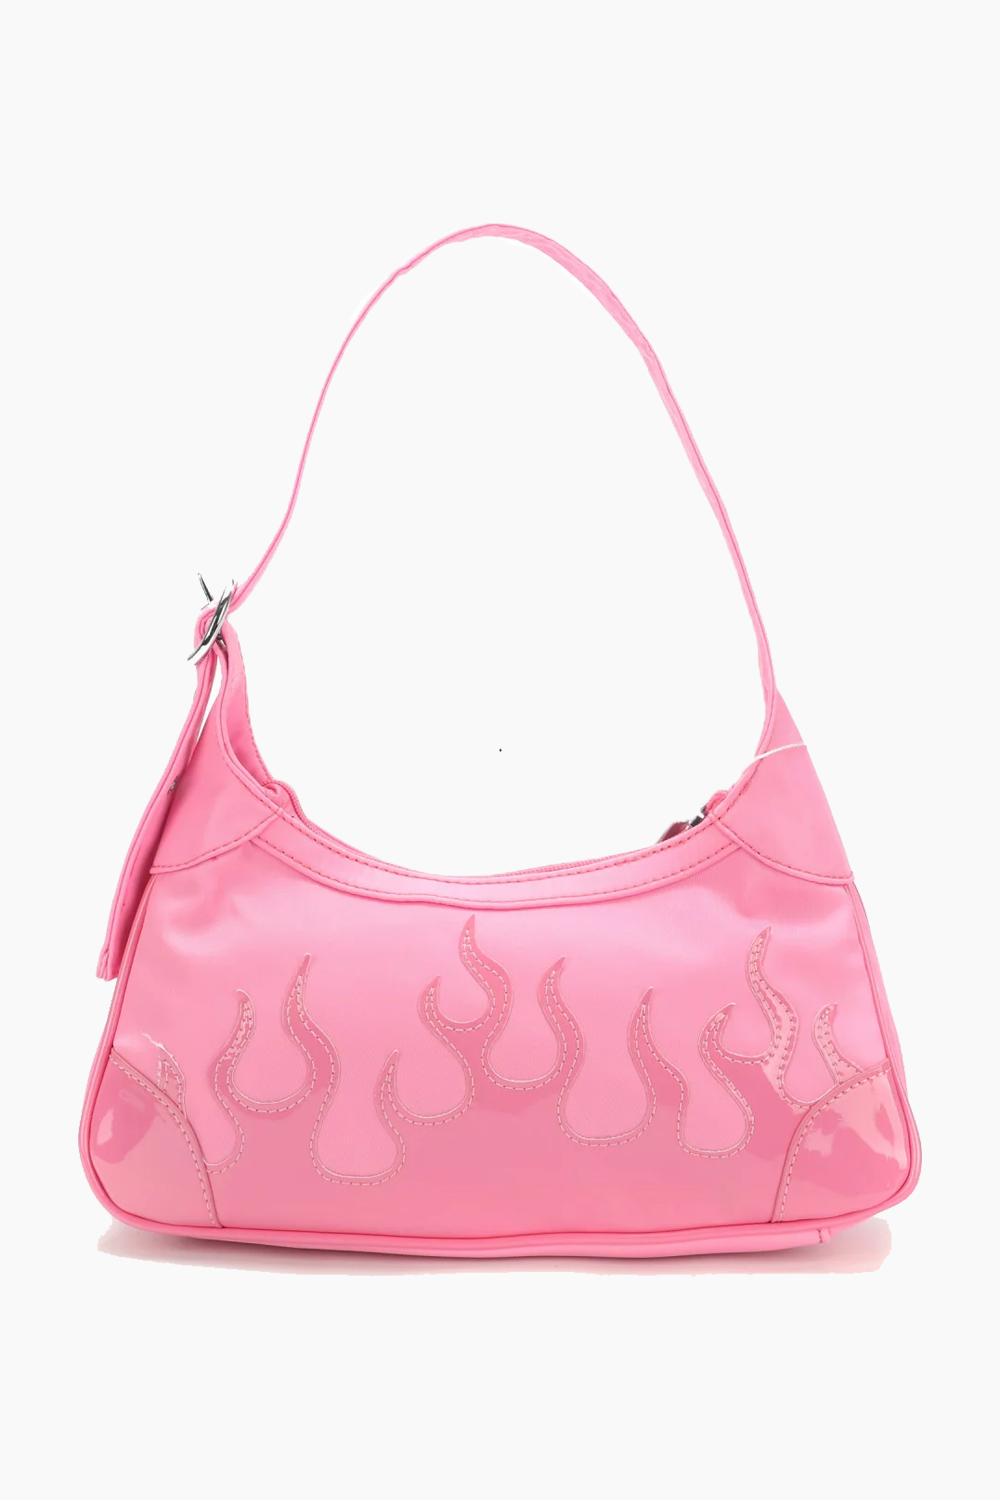 Thora Flame Shoulder Bag - Light Pink - Silfen Studio